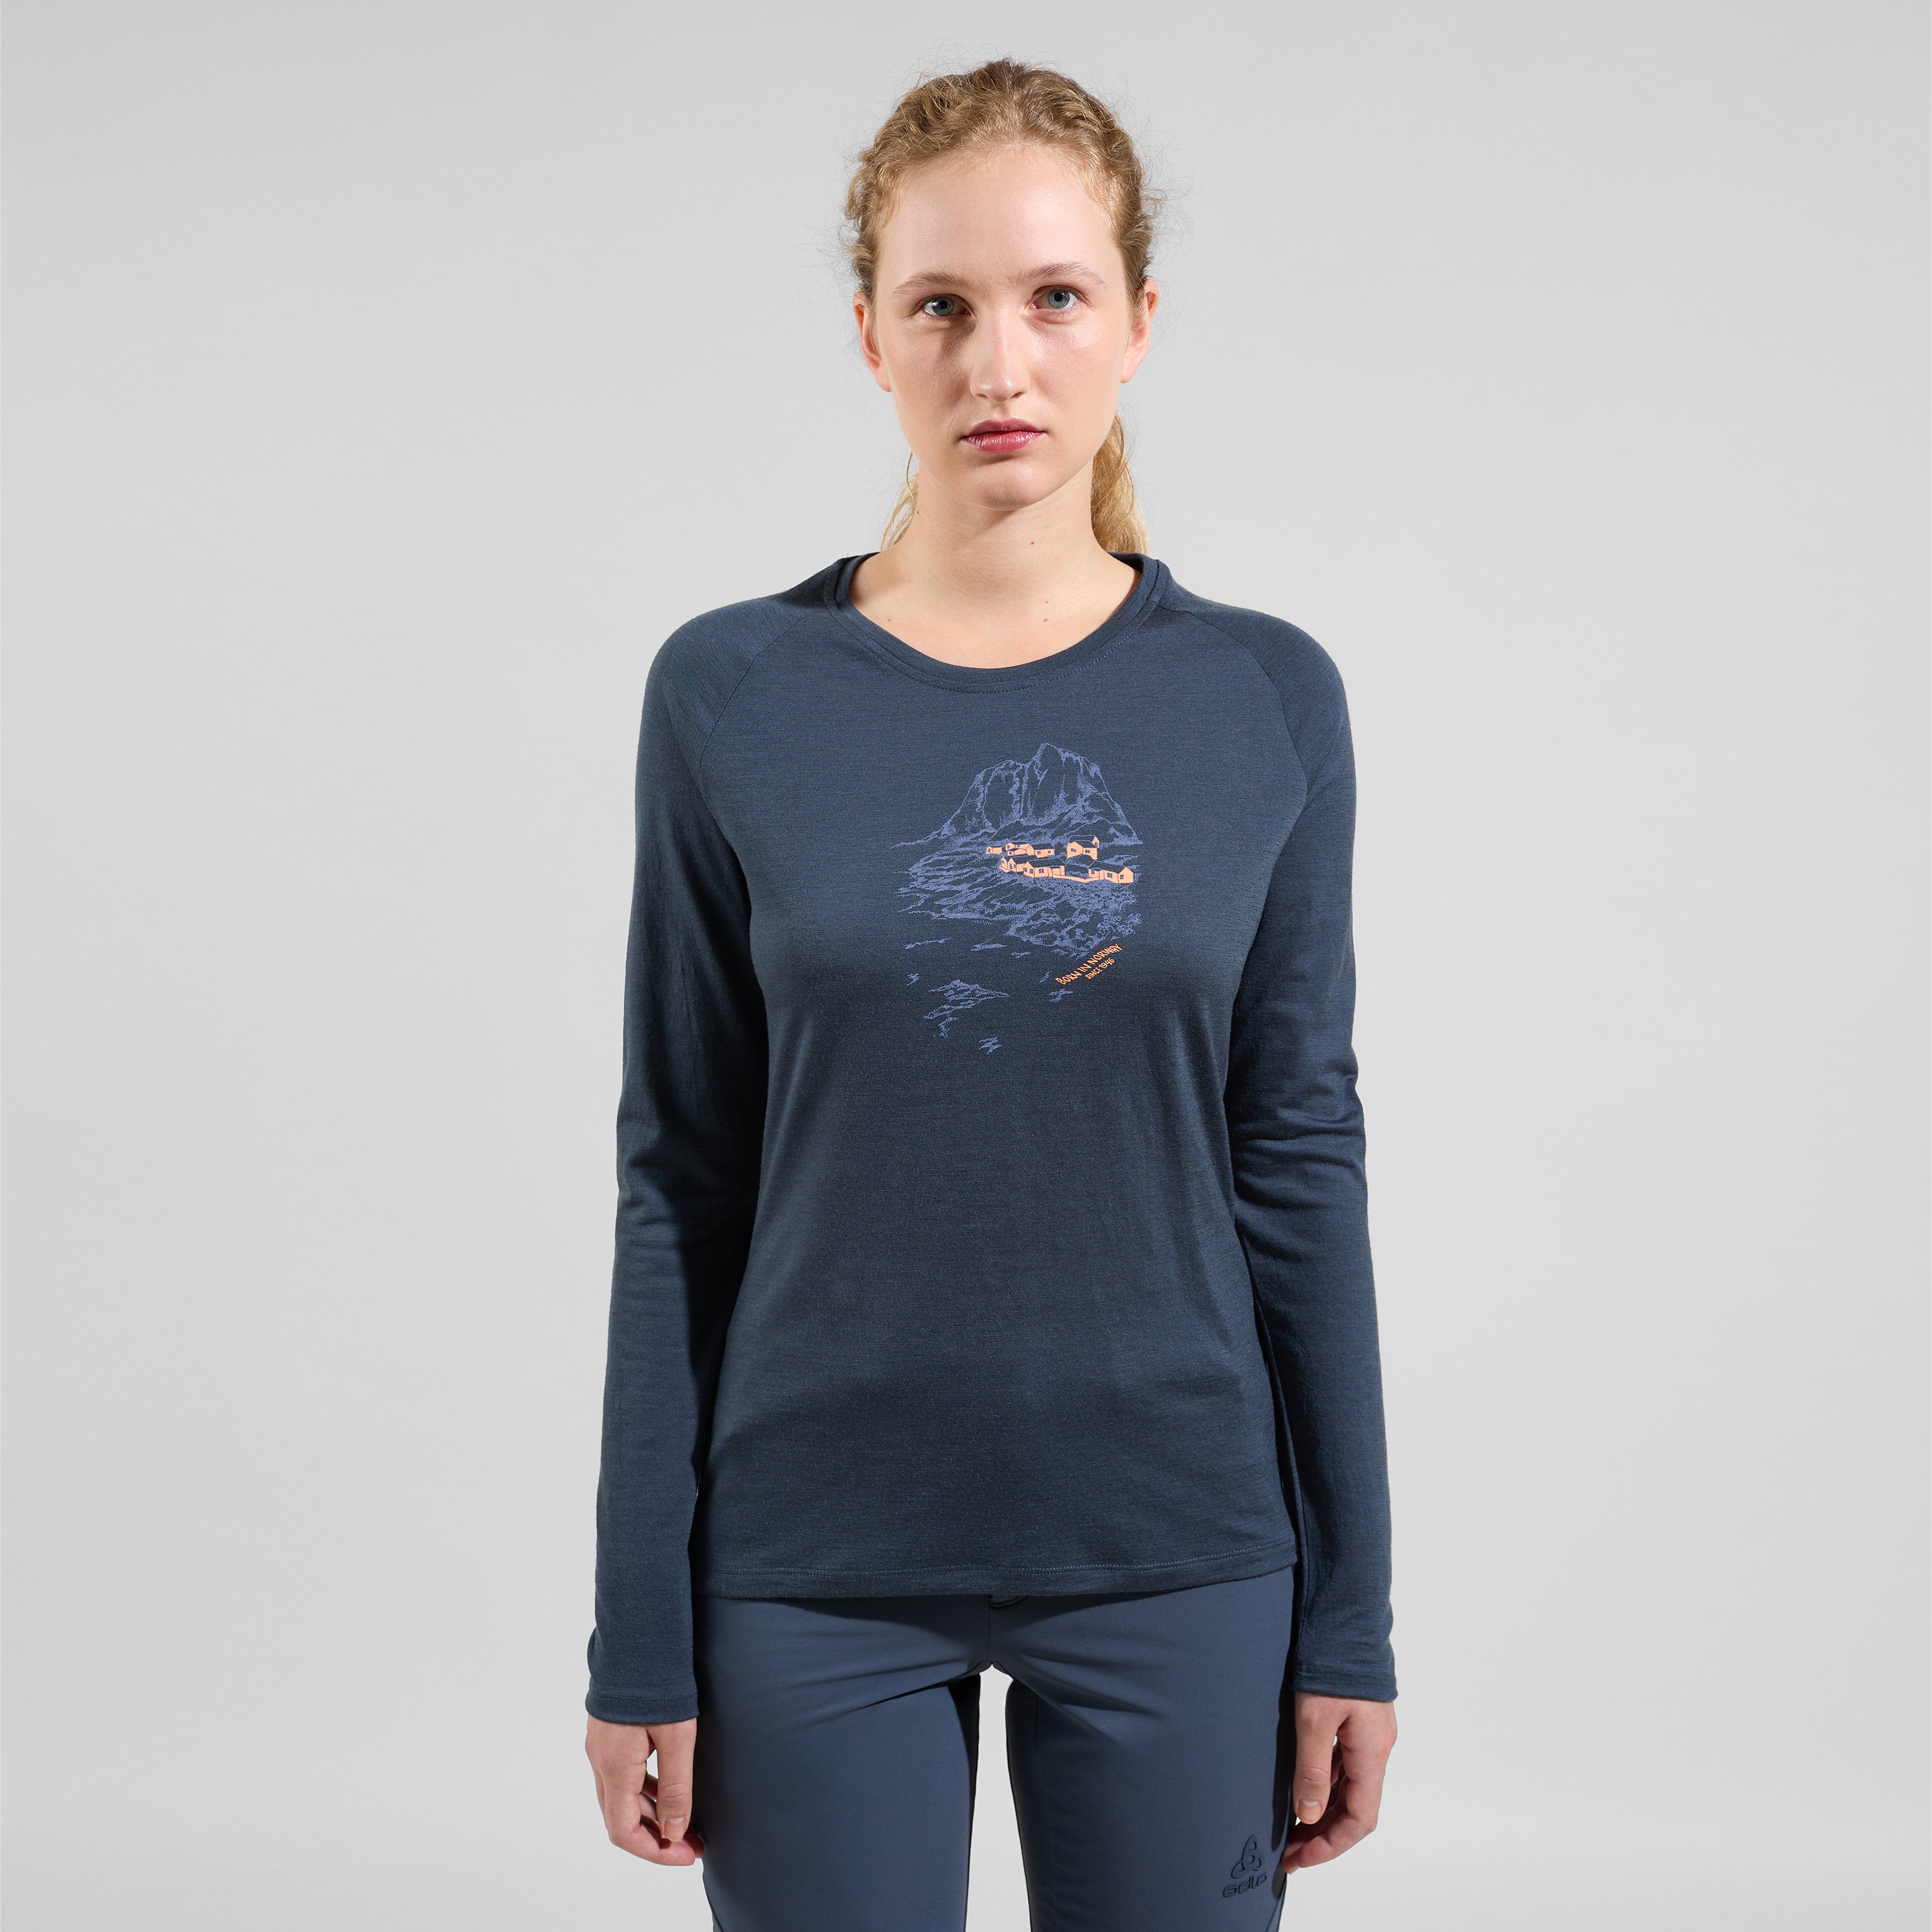 ODLO Ascent 365 Merino 200 Langarmshirt mit Norwegen-Motiv für Damen, M, marineblau